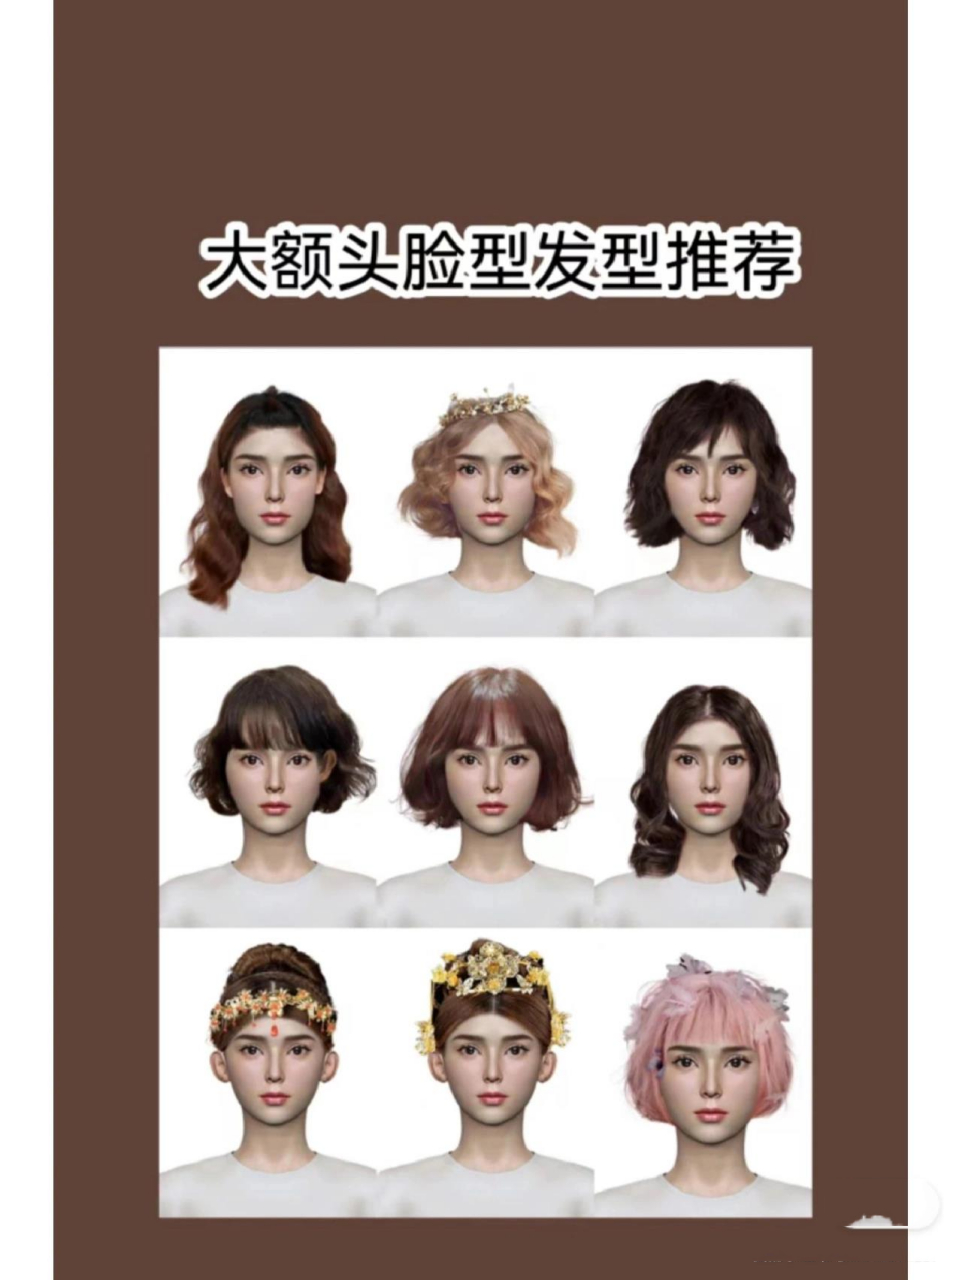 发型测试上传脸型 app图片